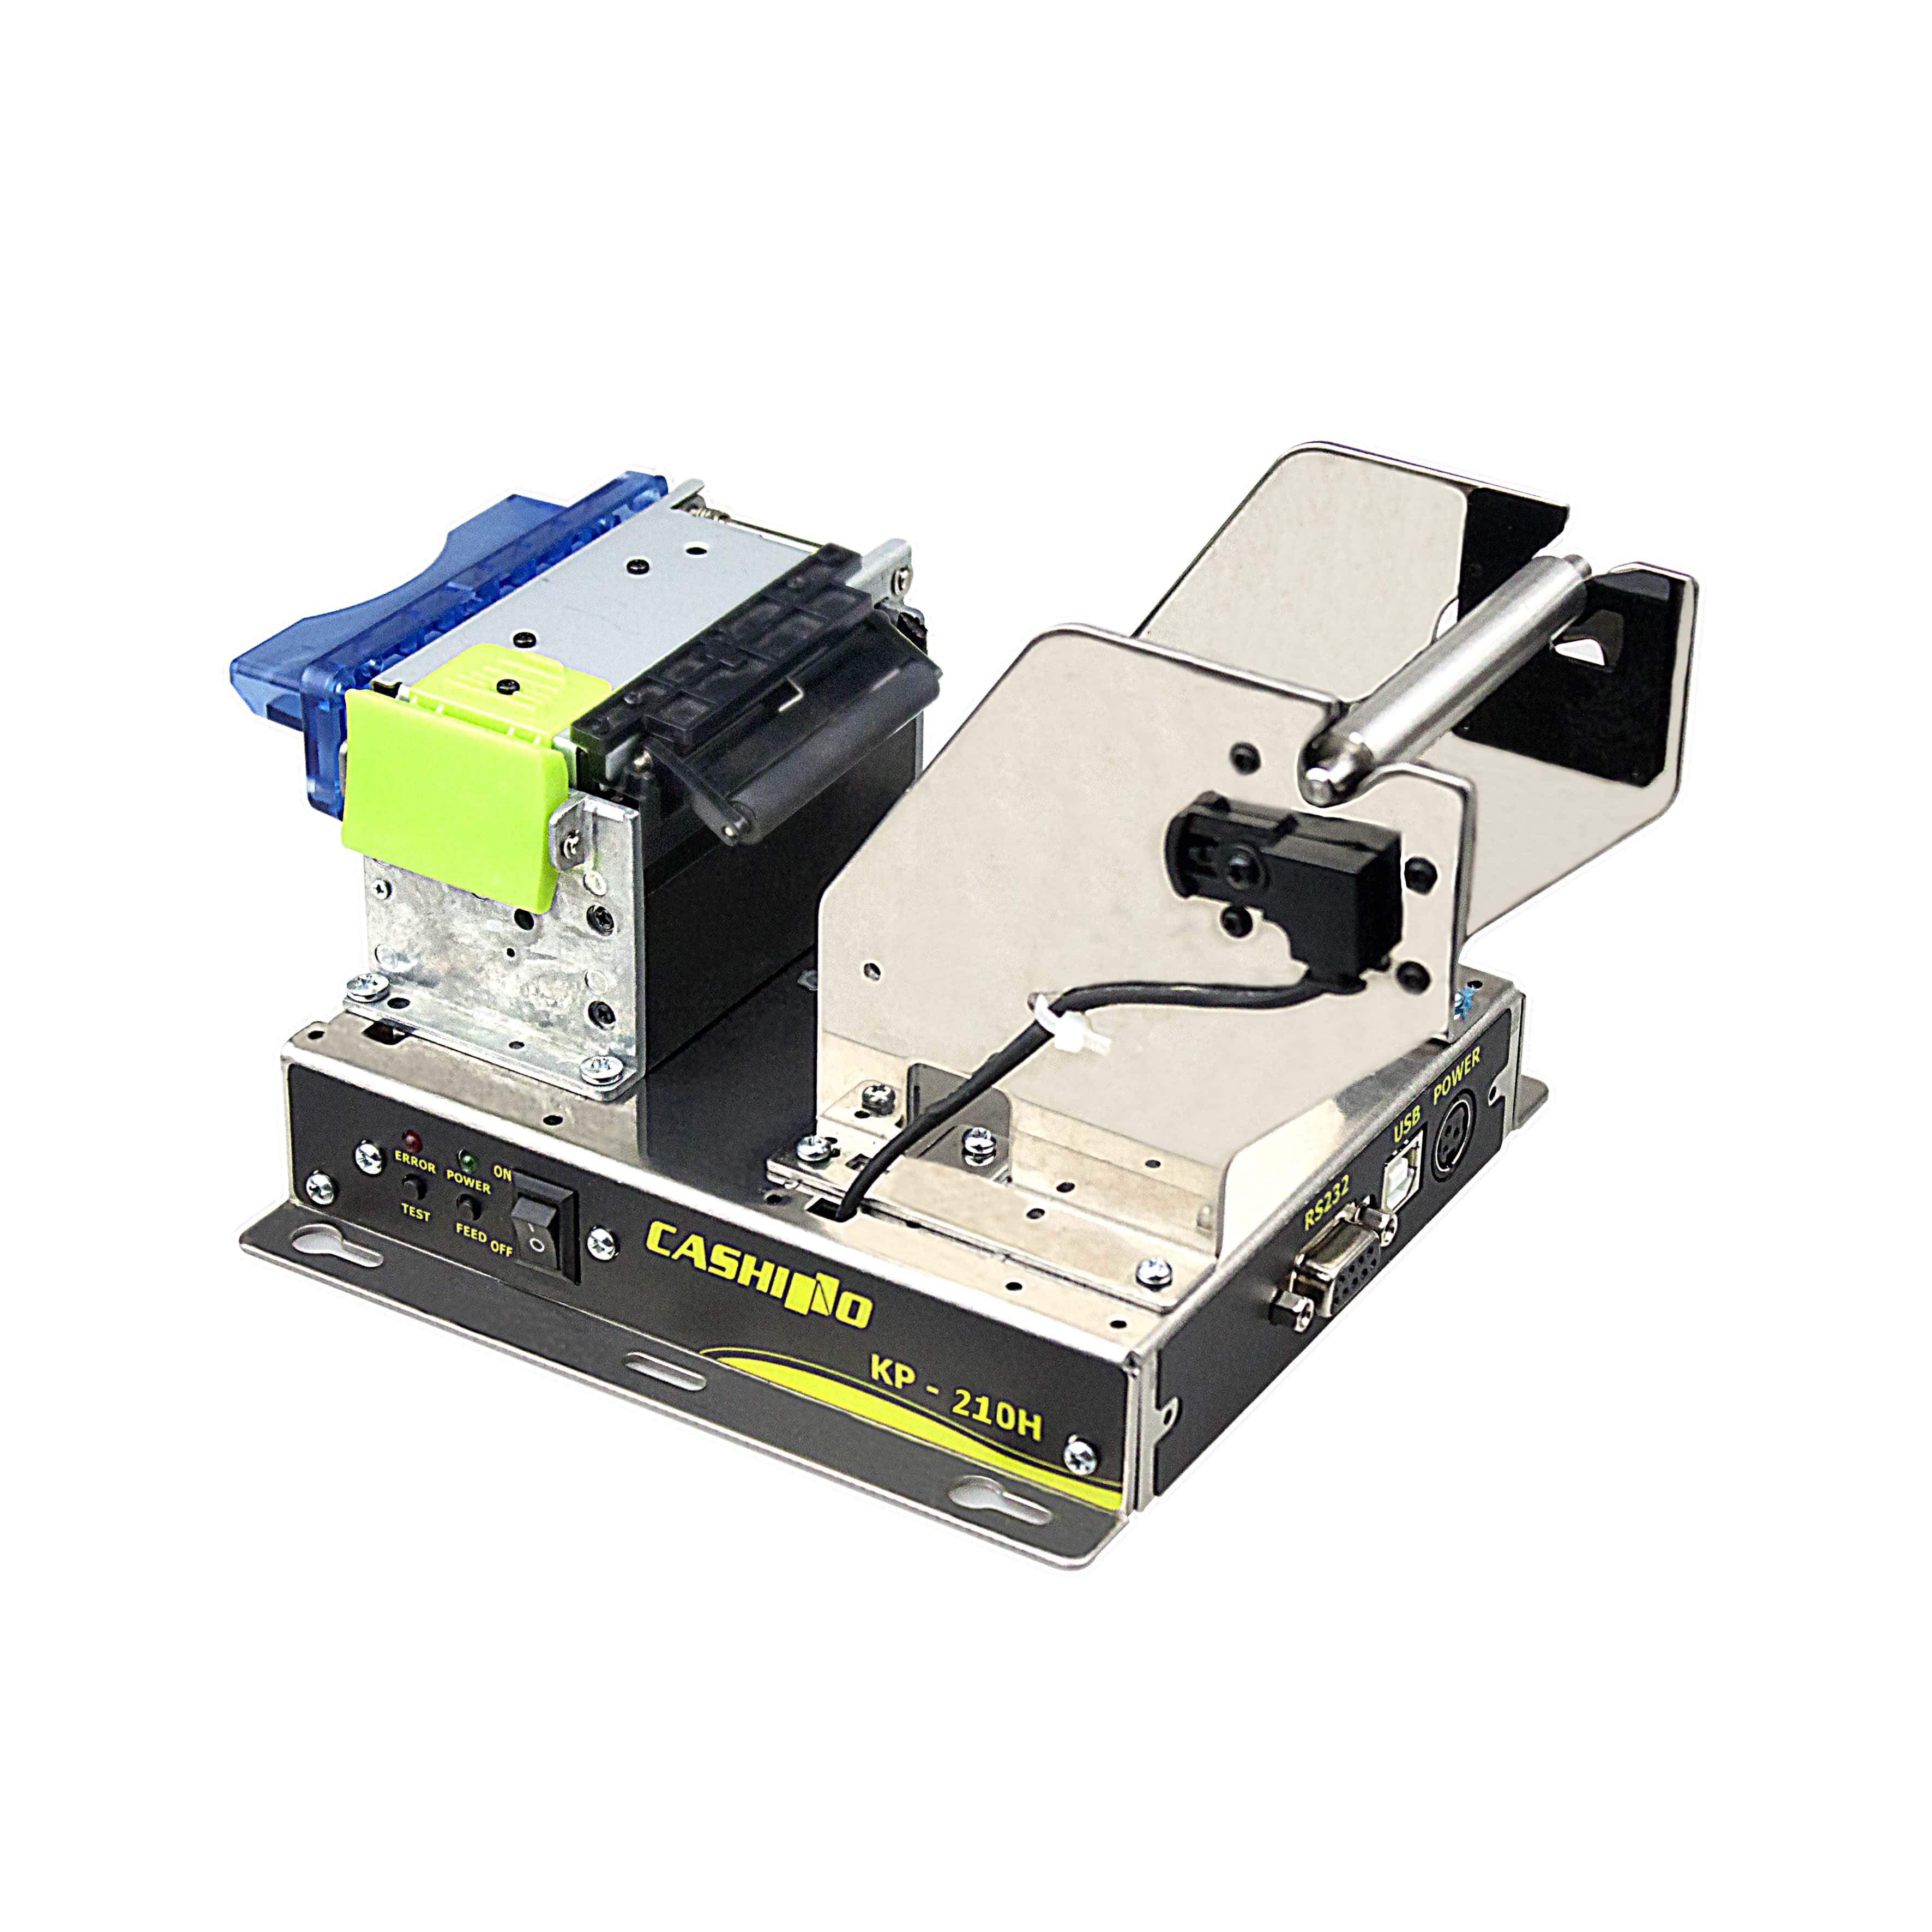 KP-210H 58 mm automatisch snijdende kiosk thermische printer
